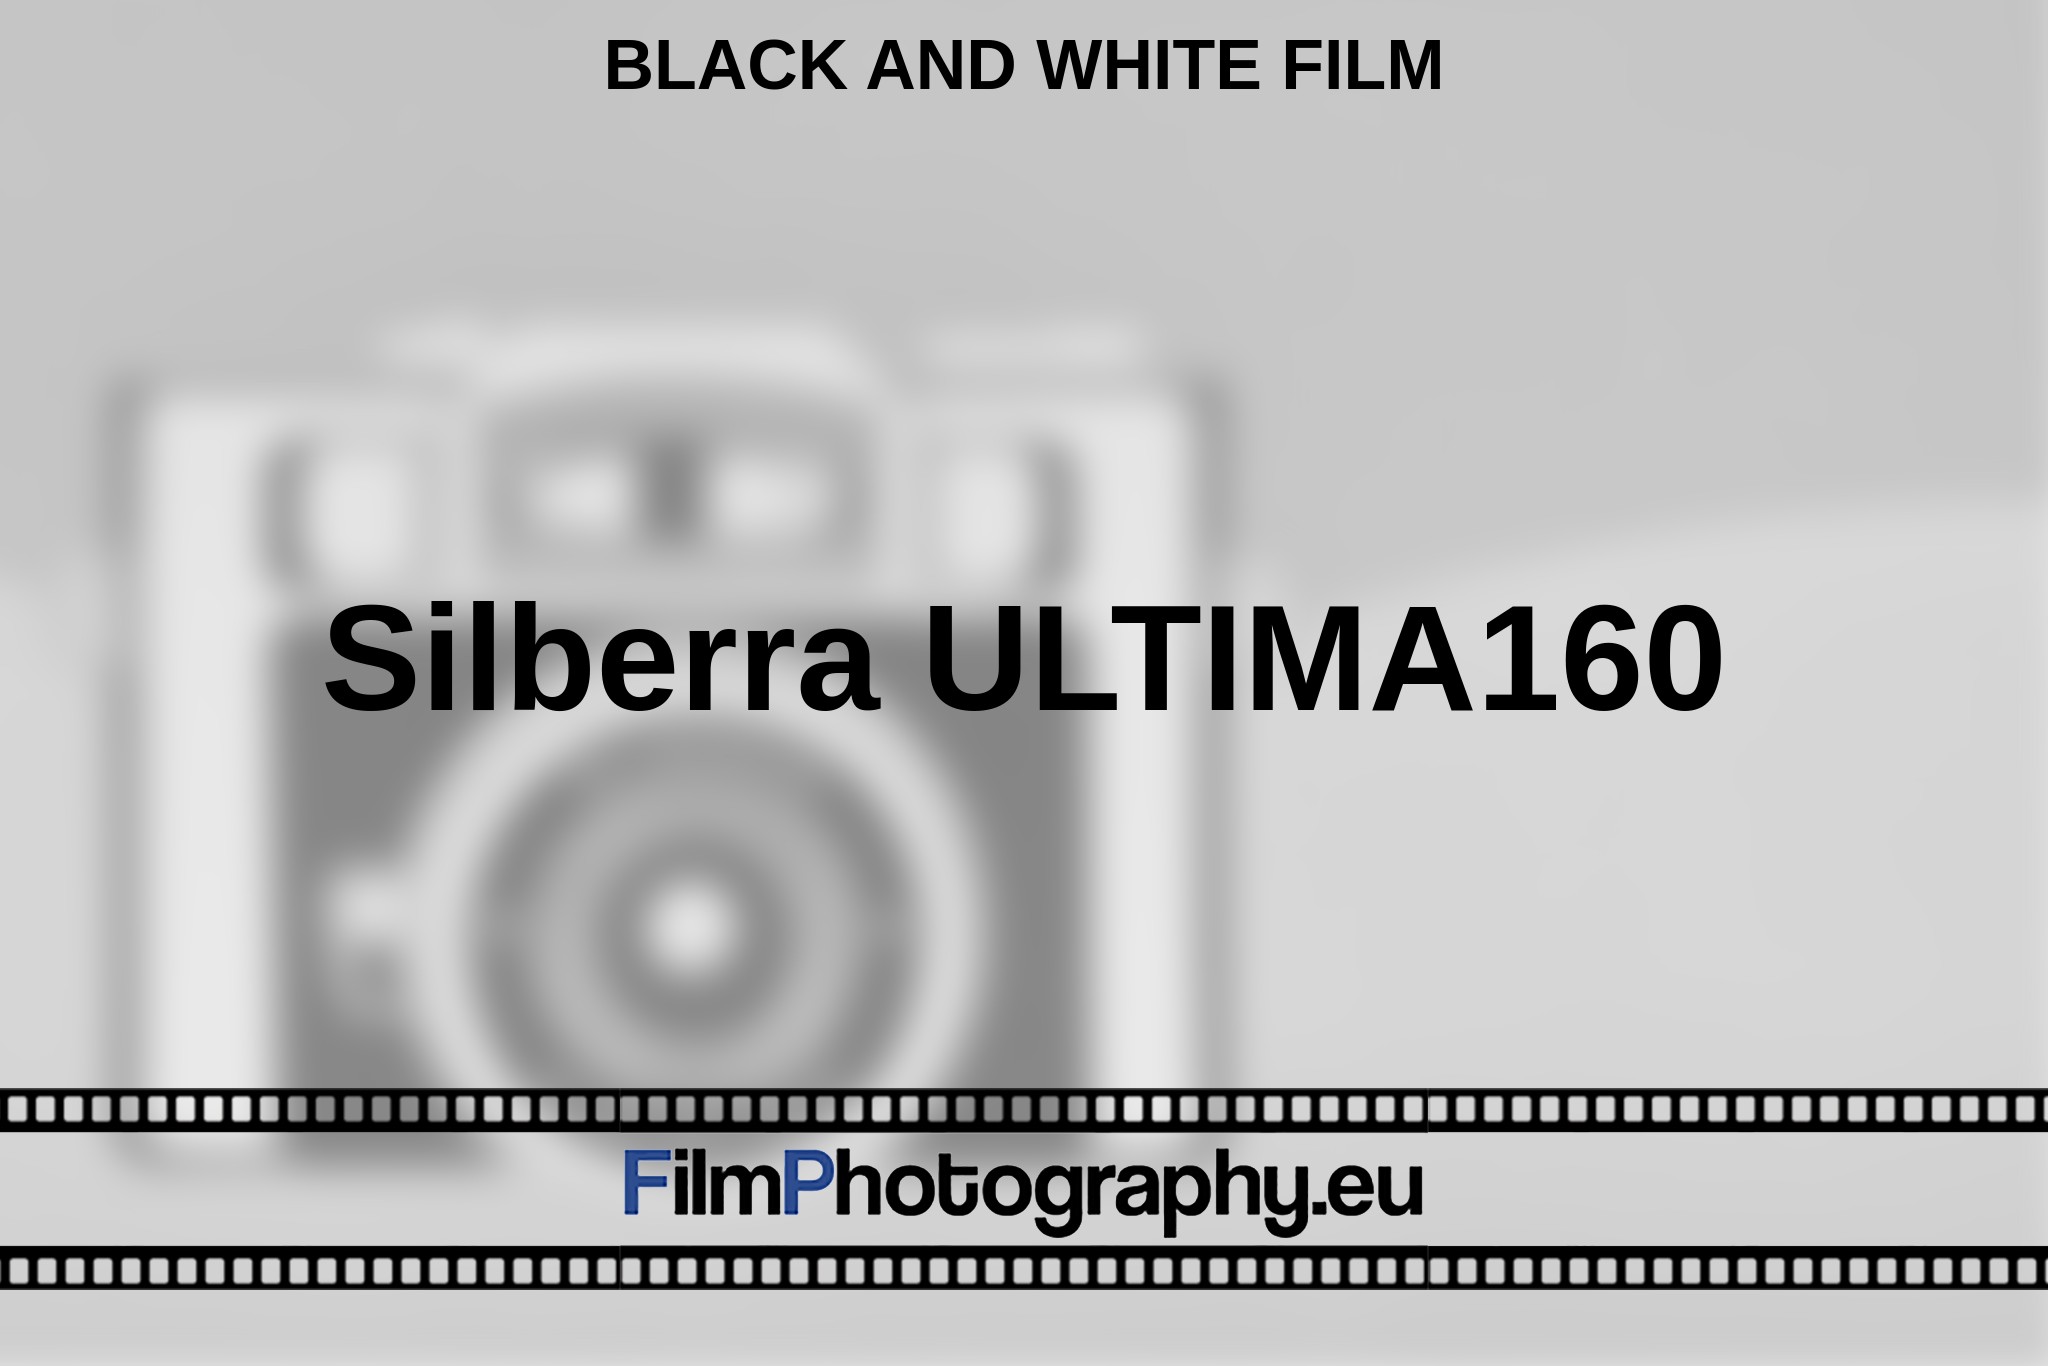 silberra-ultima160-black-and-white-film-en-bnv.jpg